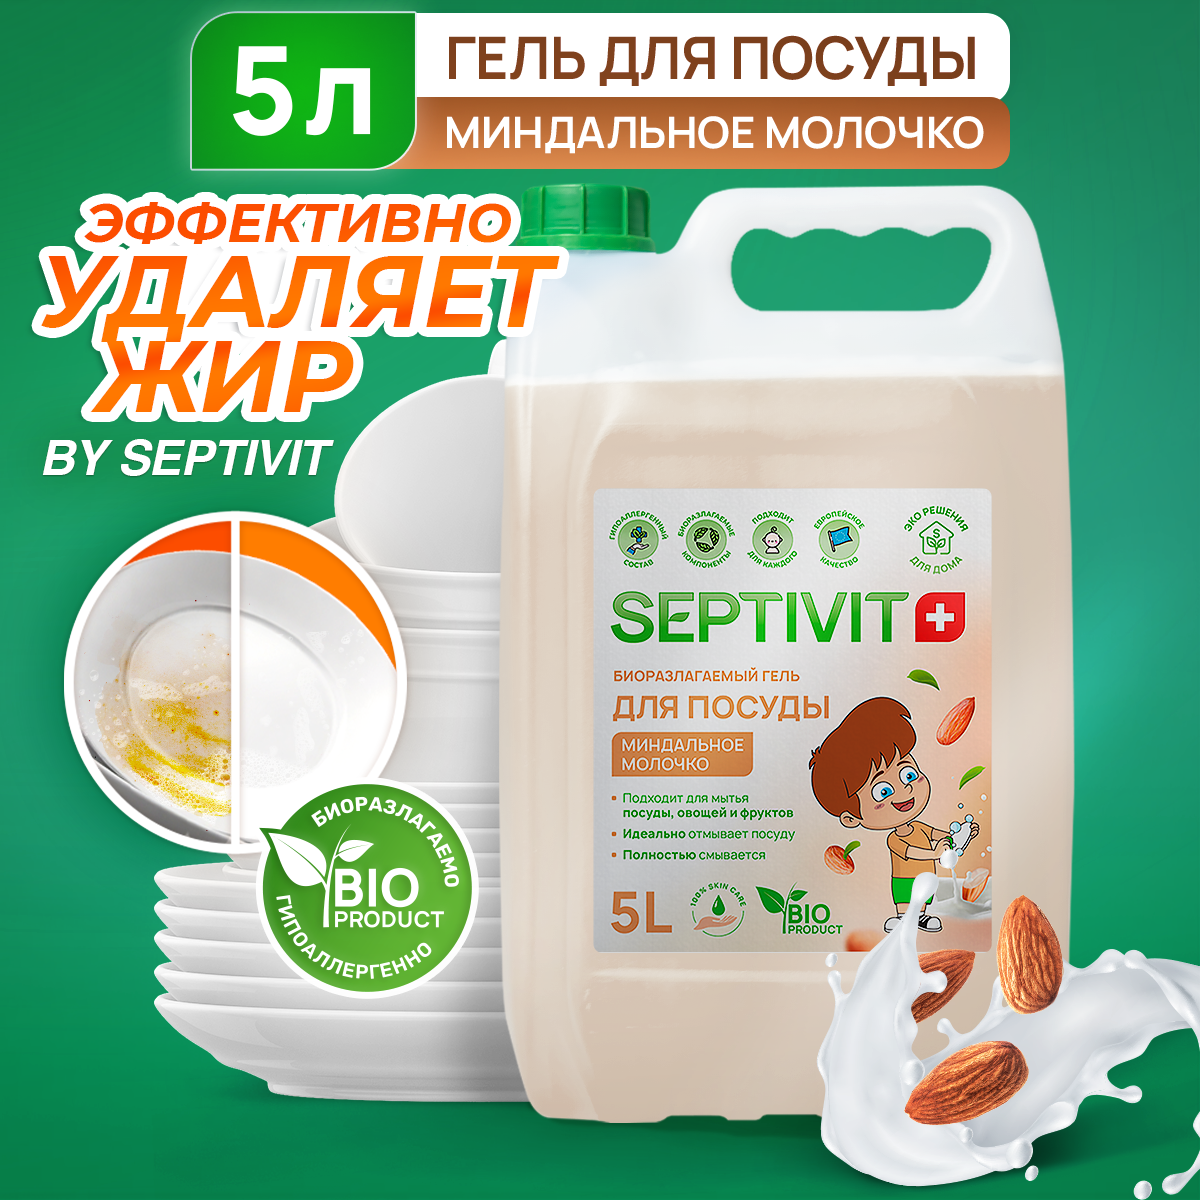 Средство для мытья посуды, овощей и фруктов SEPTIVIT Premium / Гель для мытья посуды Септивит, Миндальное молочко 5л